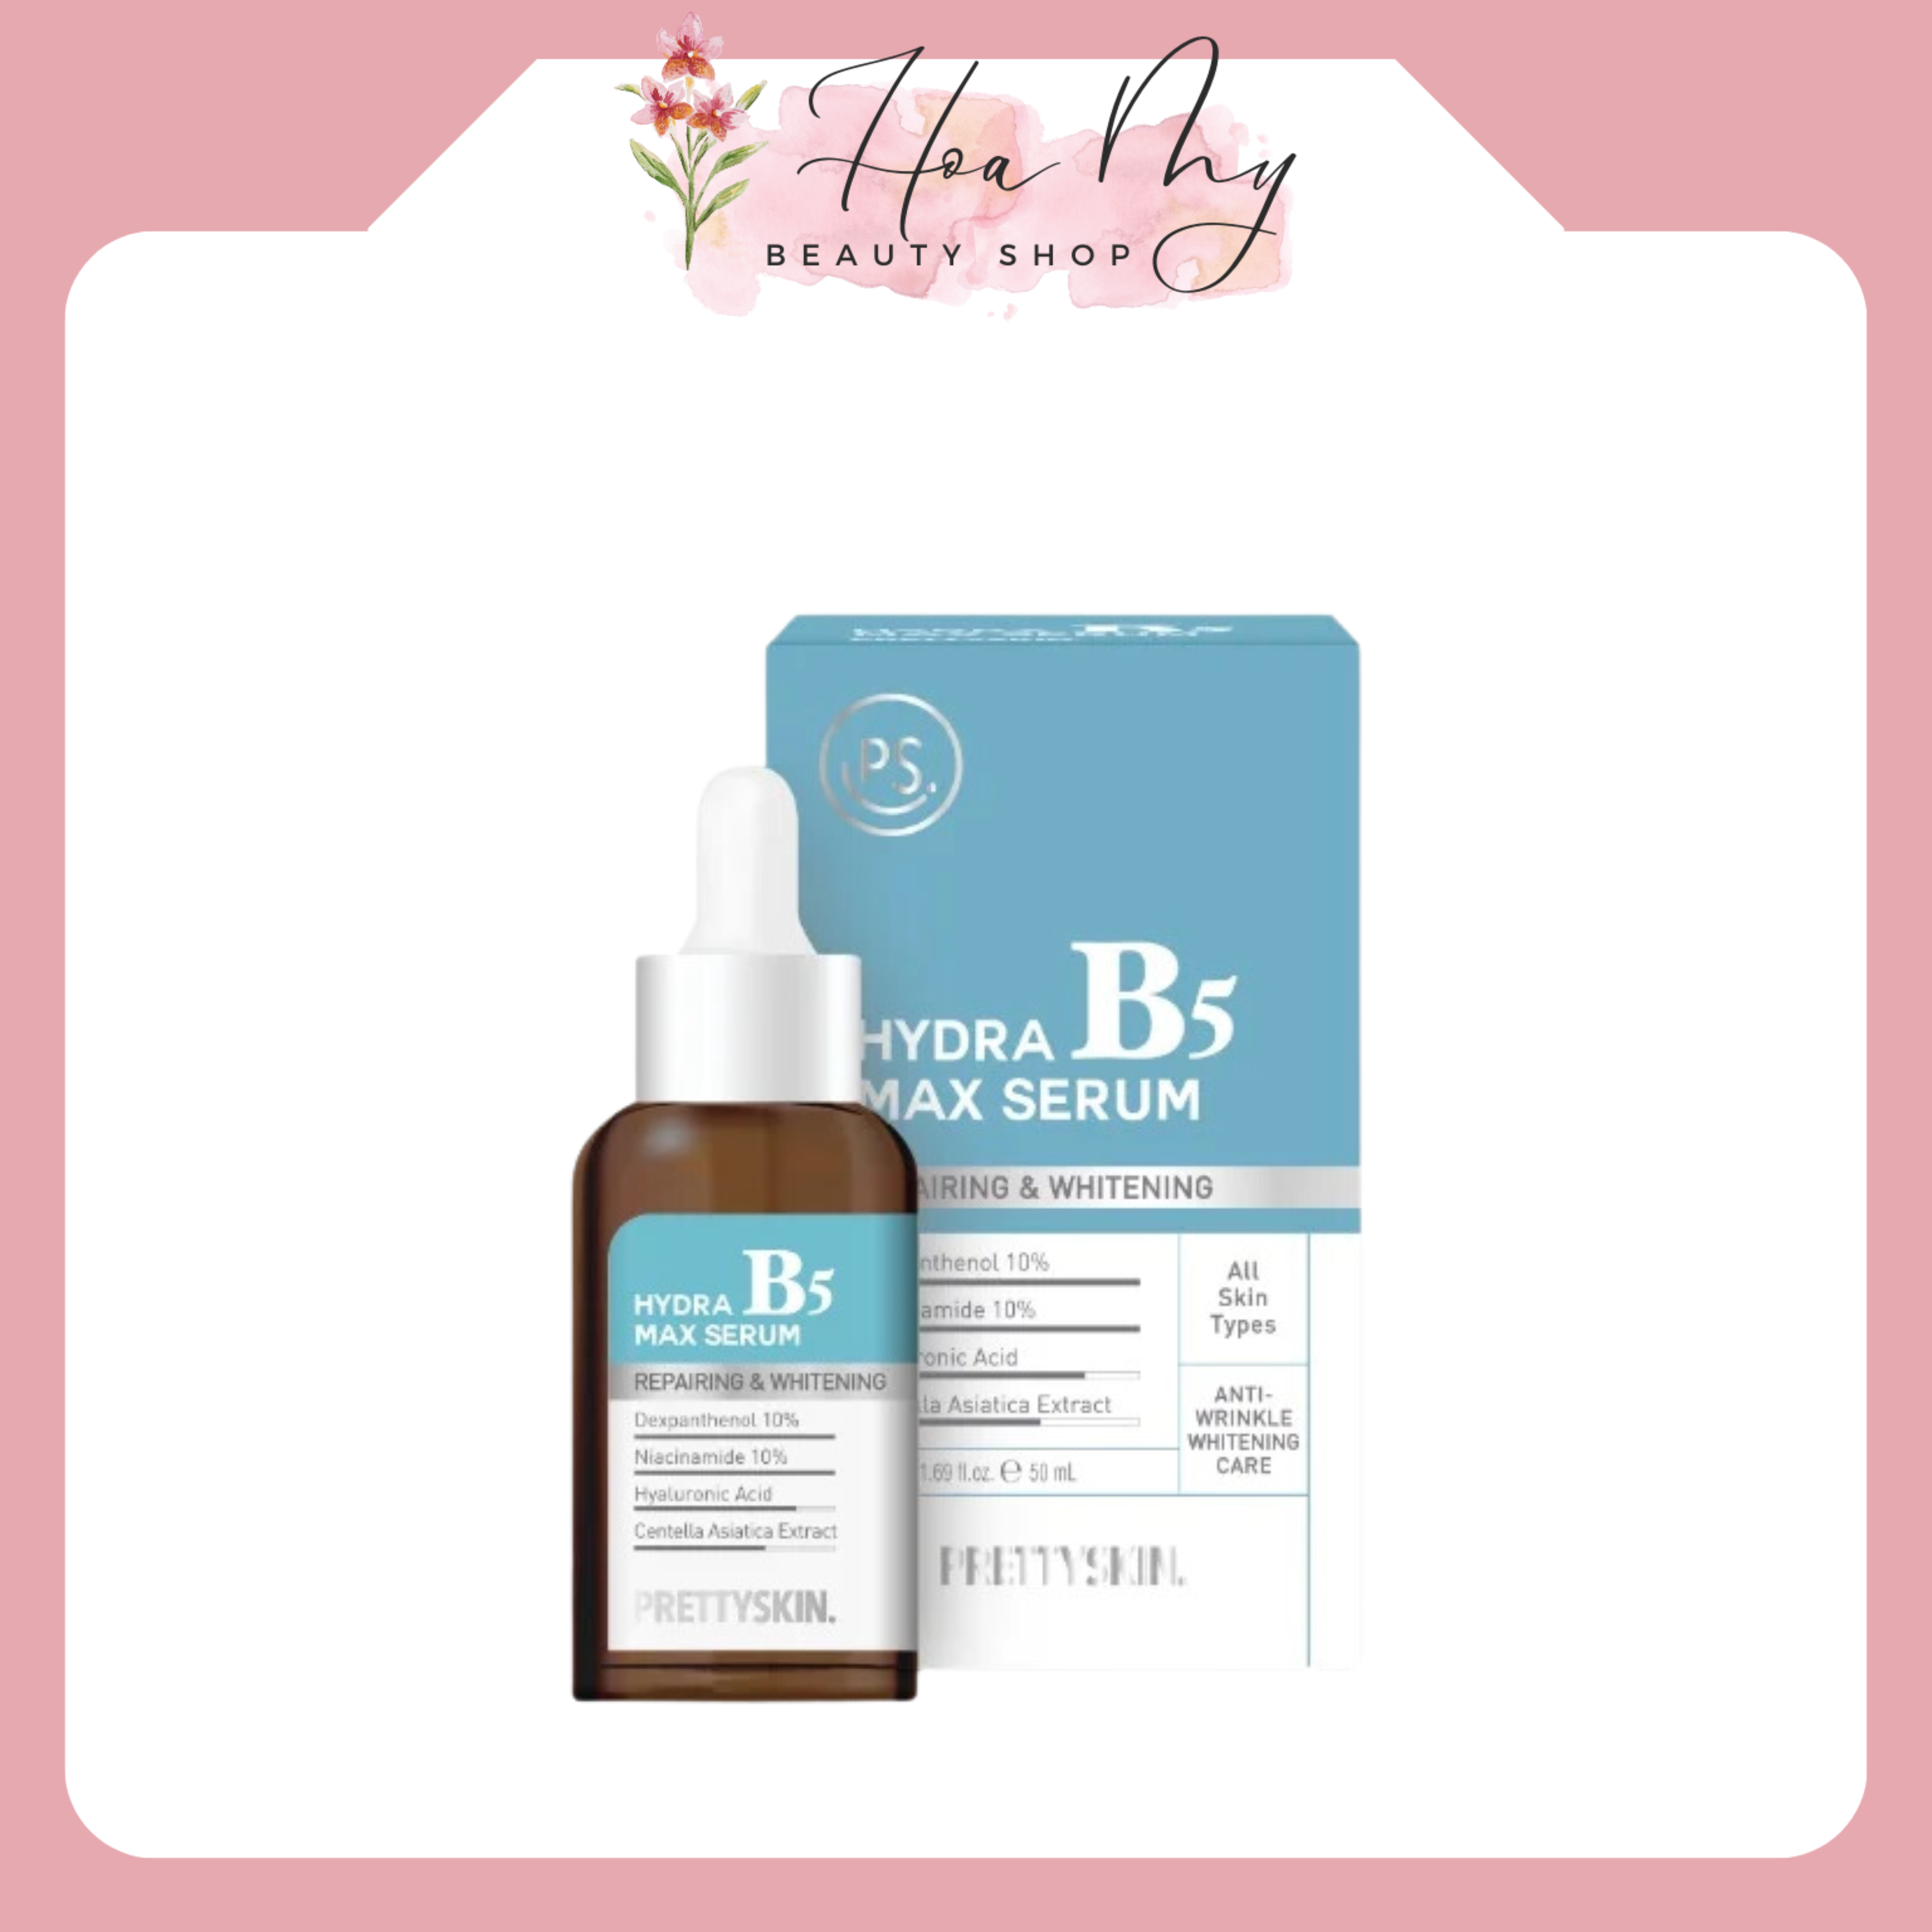 Serum phục hồi dưỡng trắng B5 Pretty Skin Hydrat B5 50ML